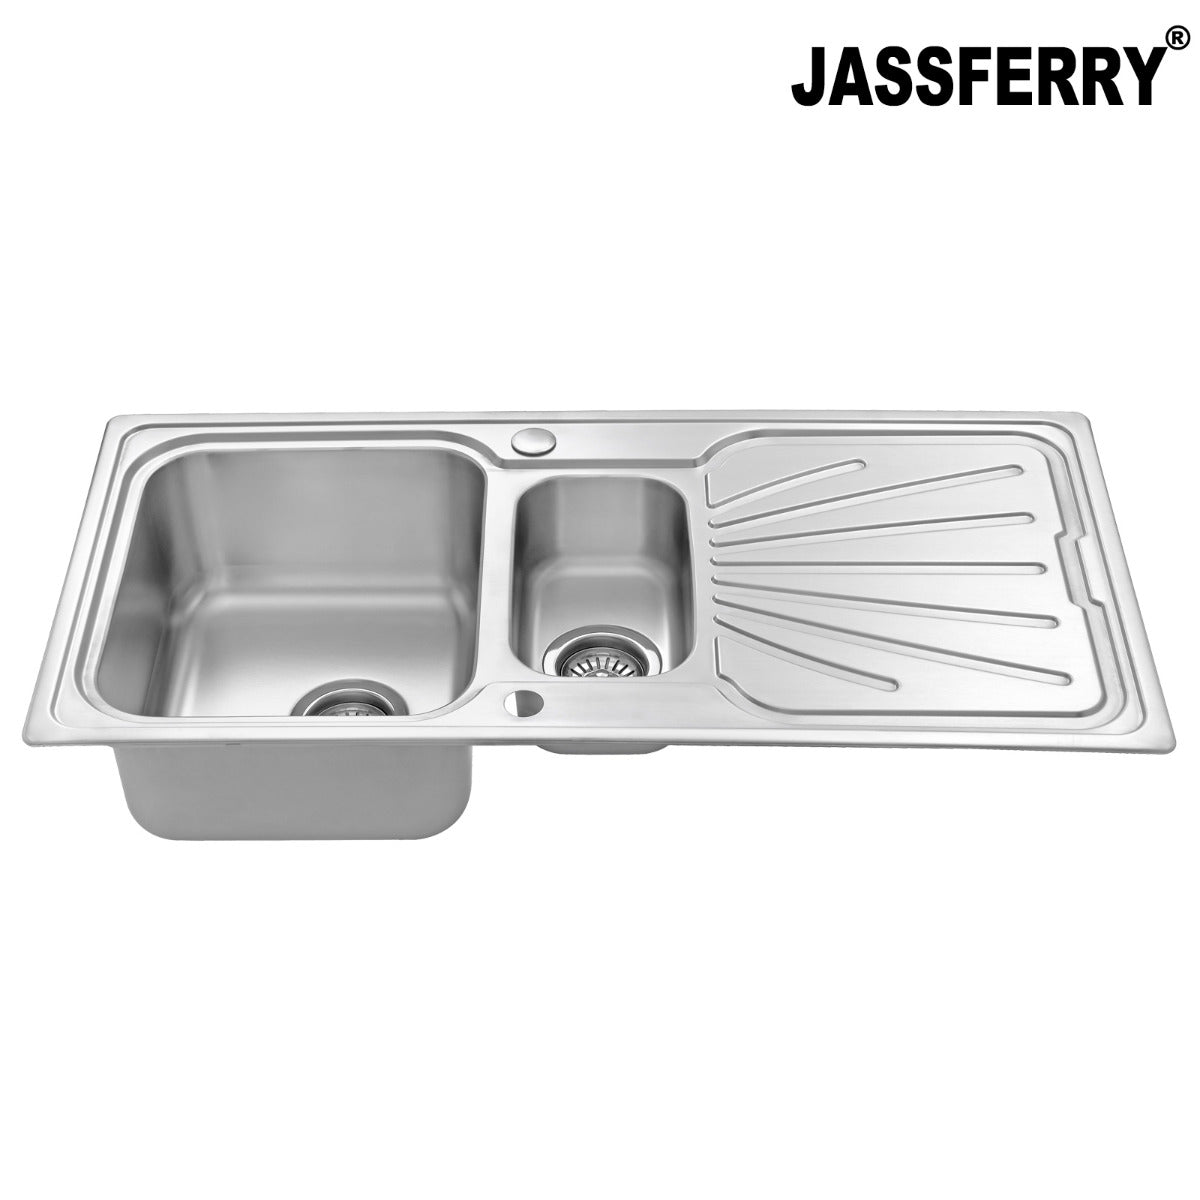 JassferryJASSFERRY Stainless Steel Kitchen Sink Inset One Half Bowl Reversible Drainer - 851BKitchen Sinks